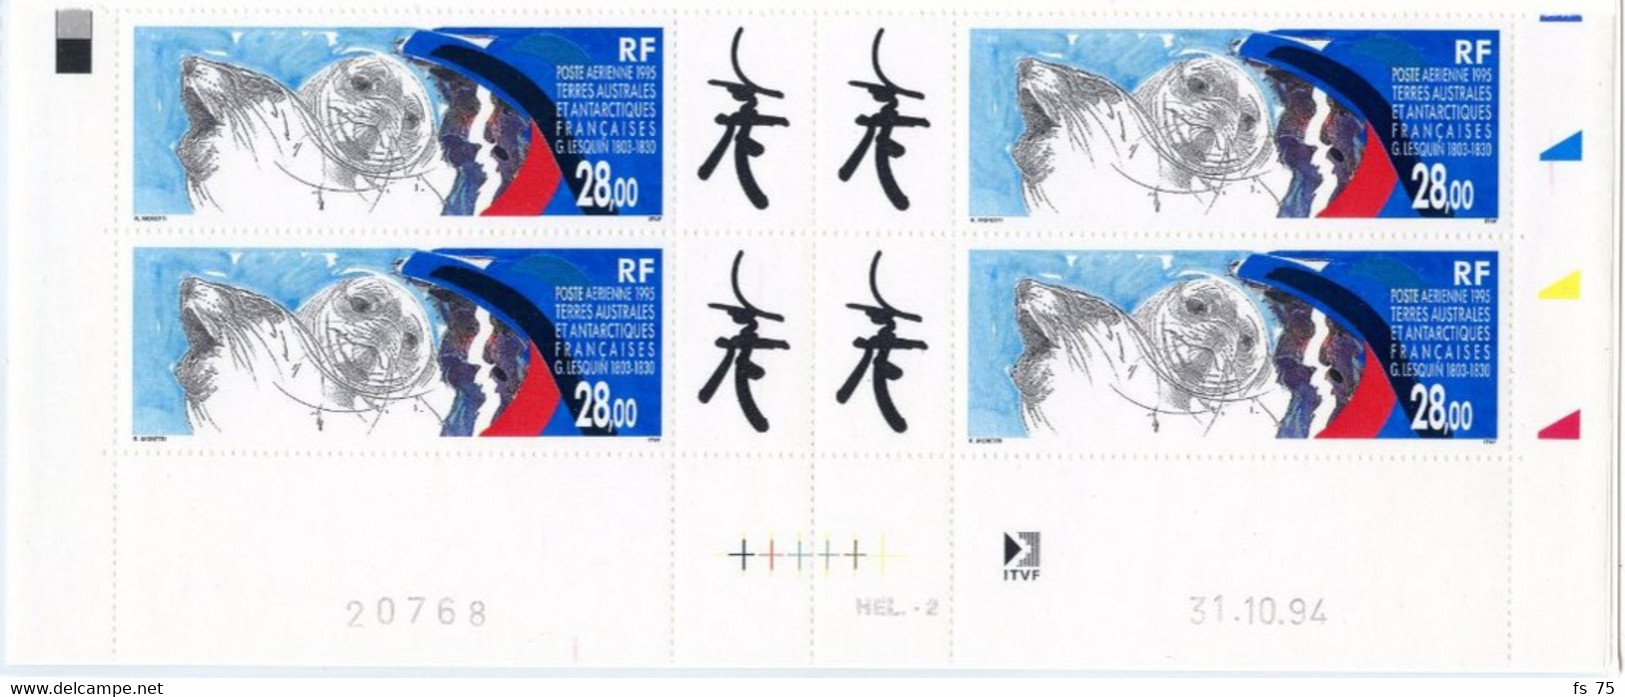 T.A.A.F. - PA 136 - 28F HOMMAGE A G. LESQUIN - BLOC DE 4 COIN DATE 31.10.94 - Unused Stamps